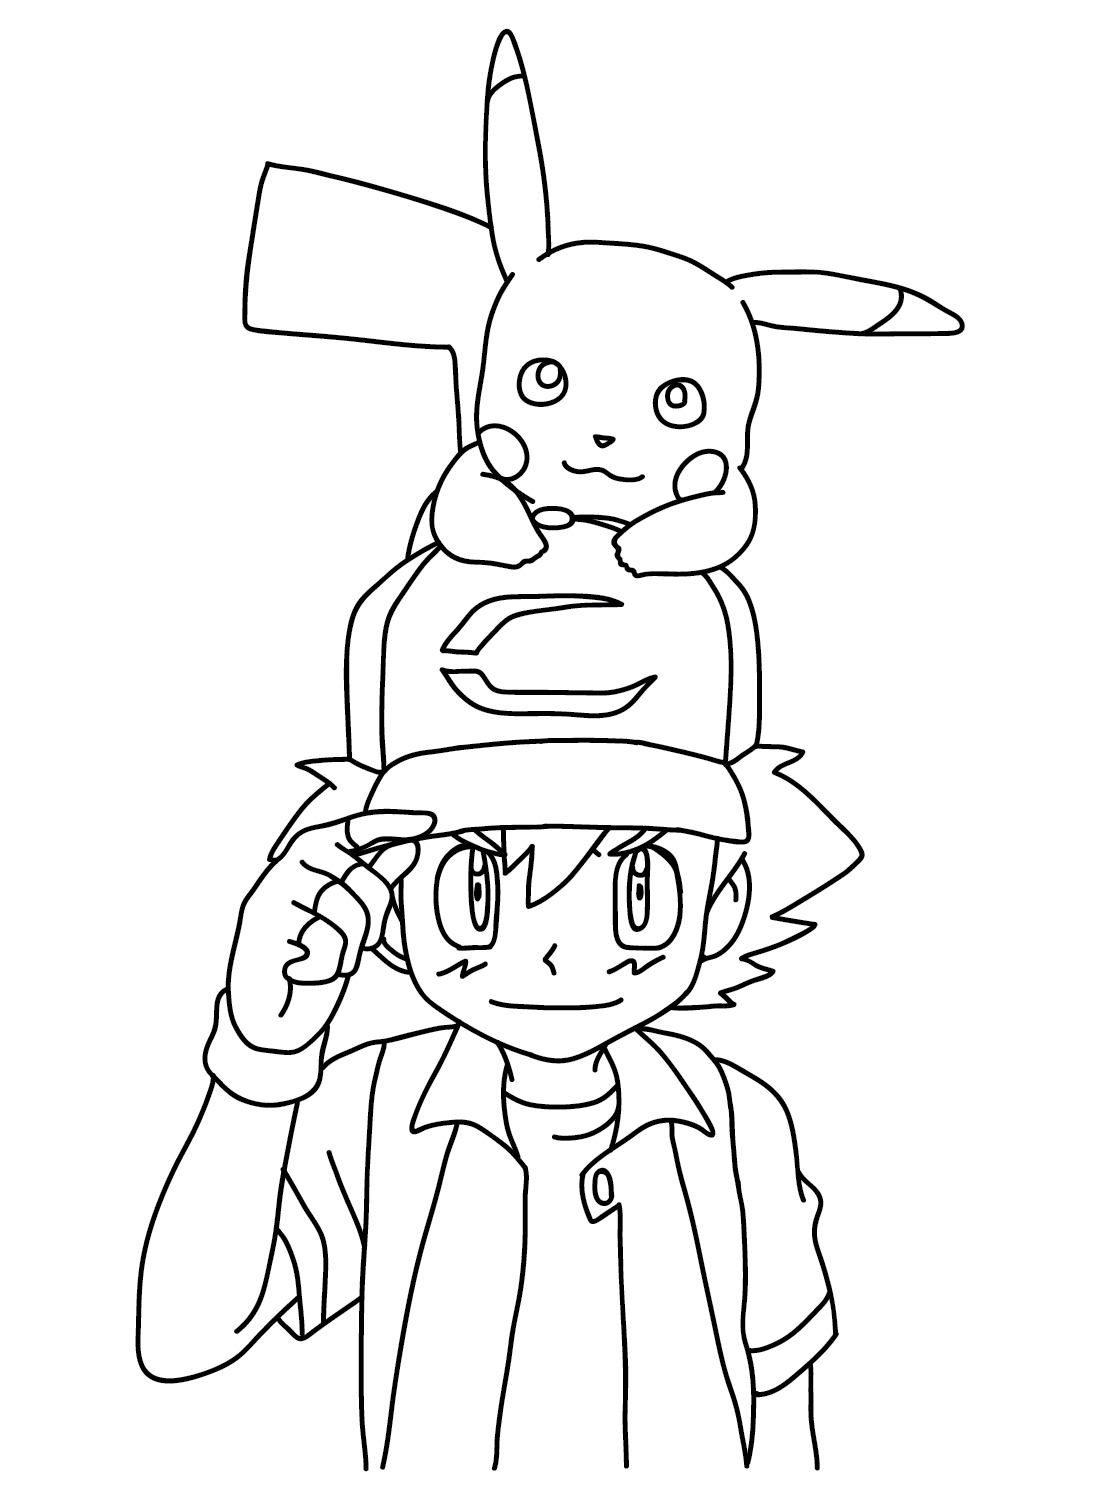 Ash Ketchum and Pikachu Coloring from Ash Ketchum